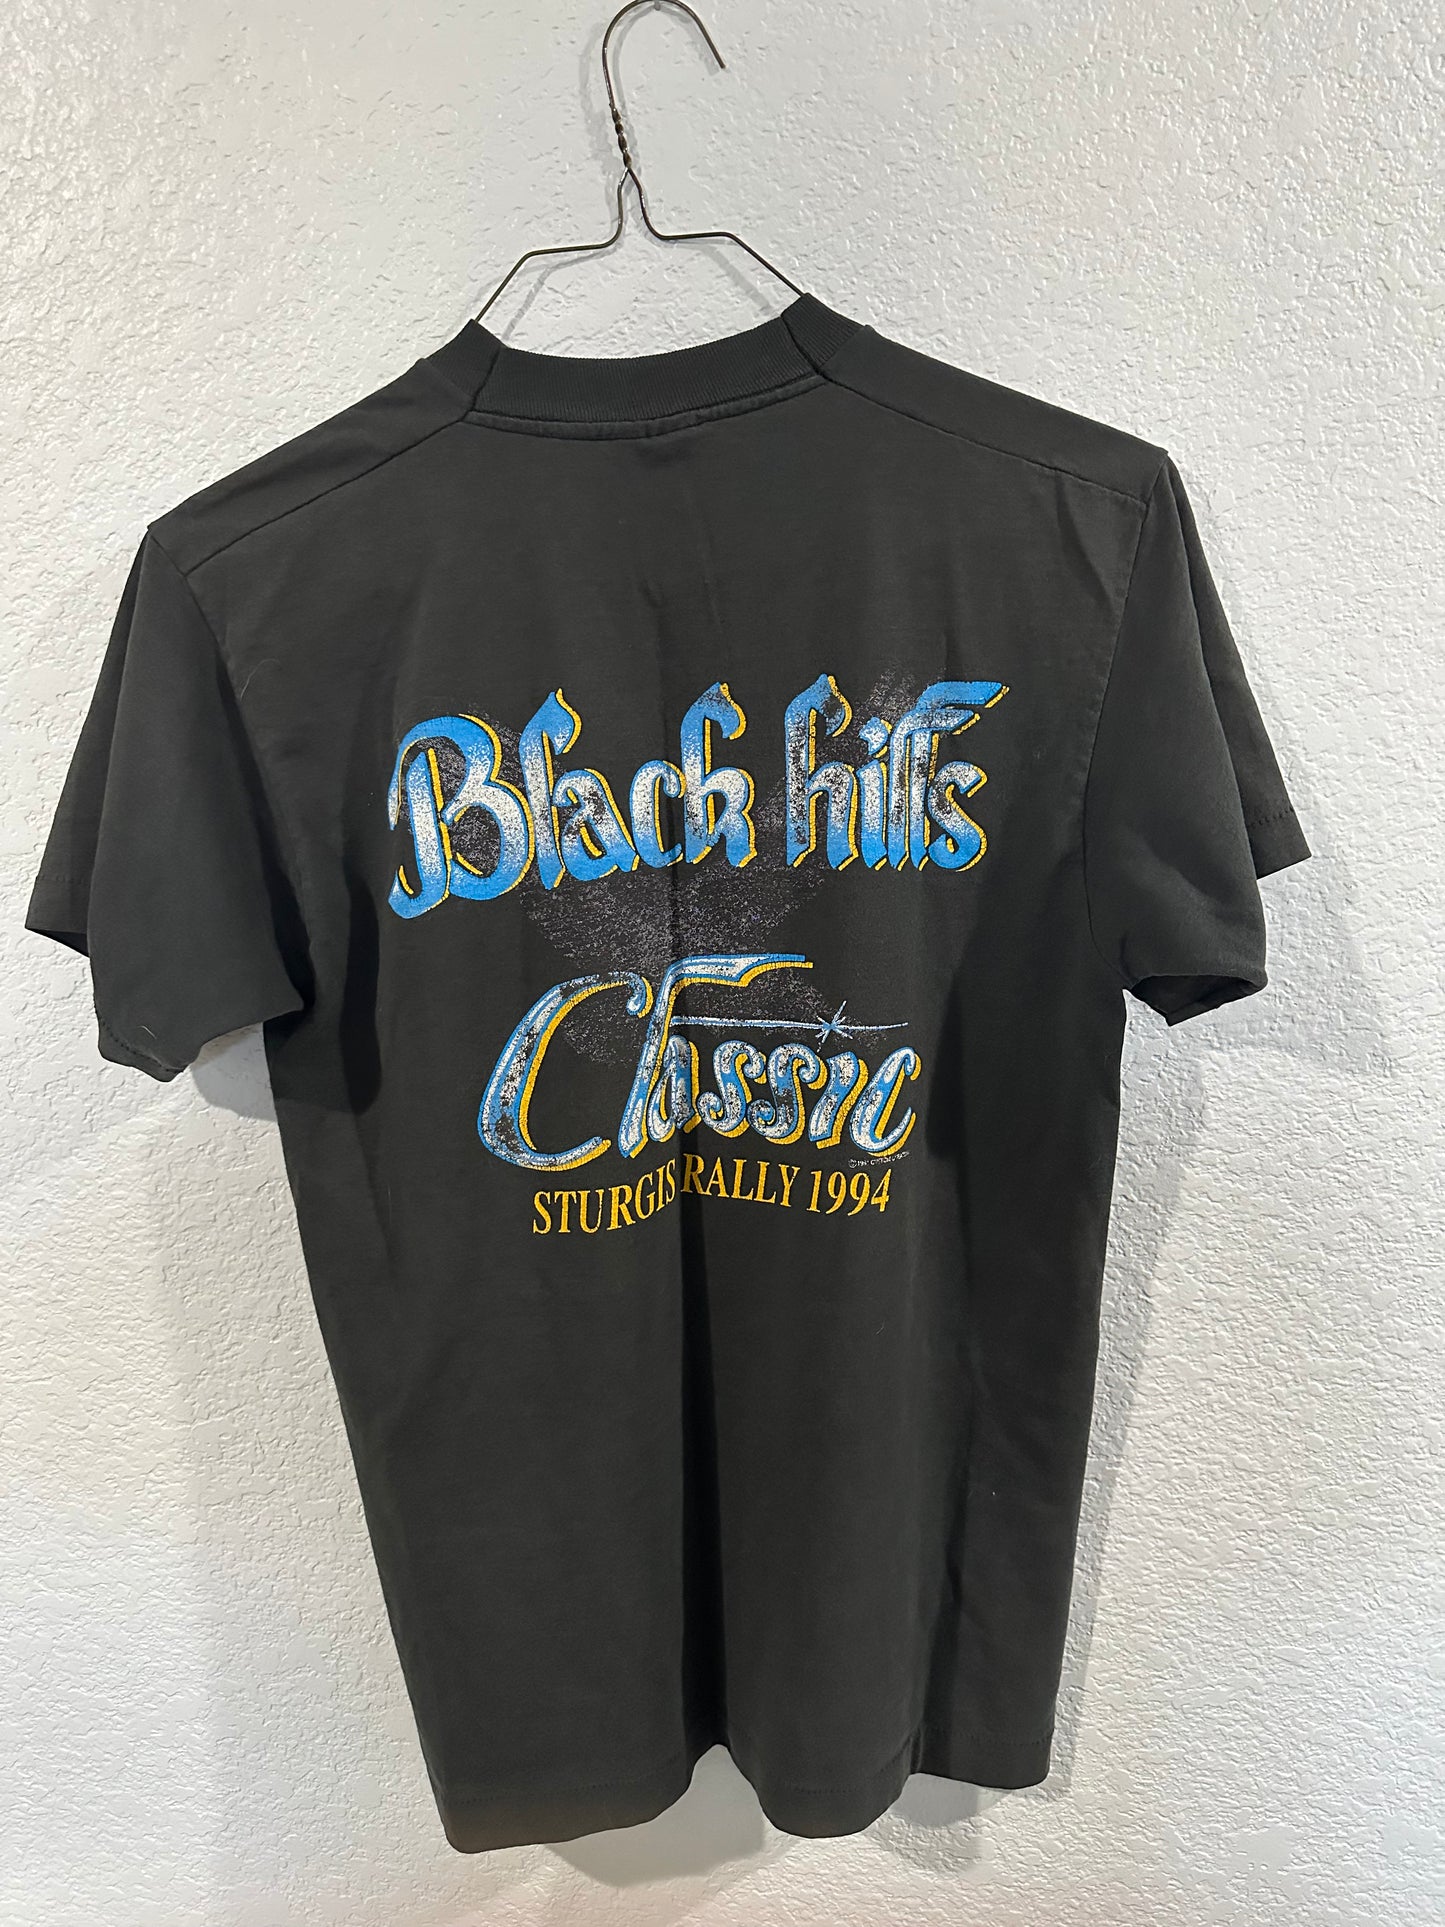 1994 Black Hills Sturgis tee